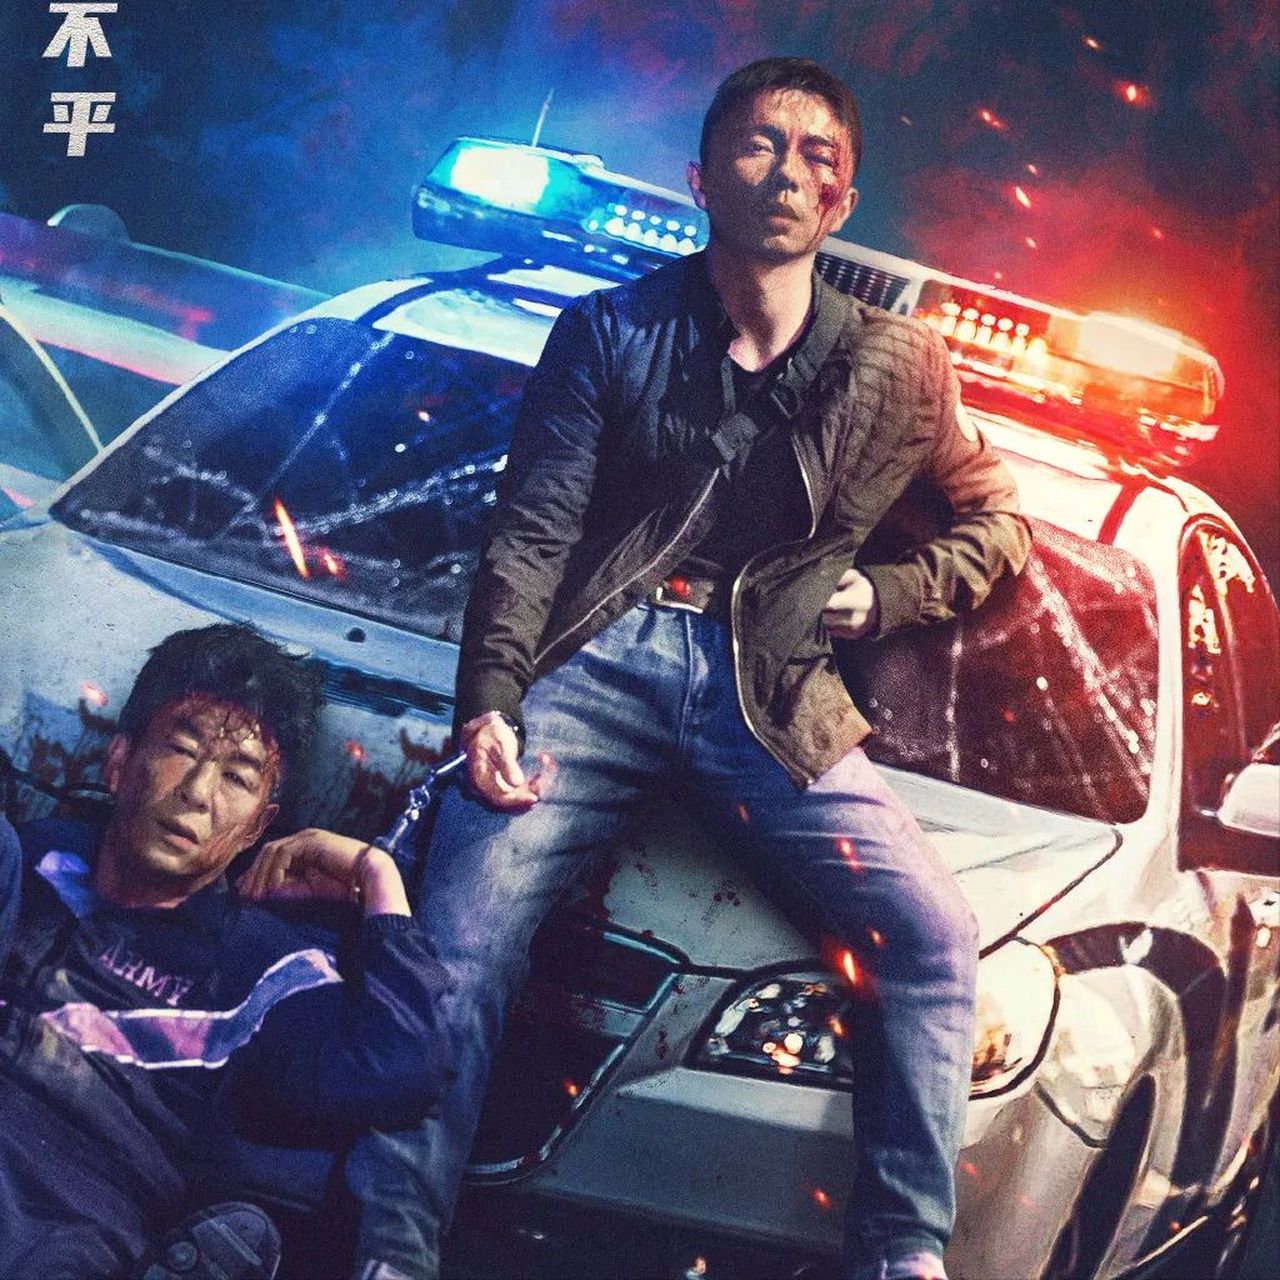 谢苗主演的新电影《东北警察故事2》,近日上线